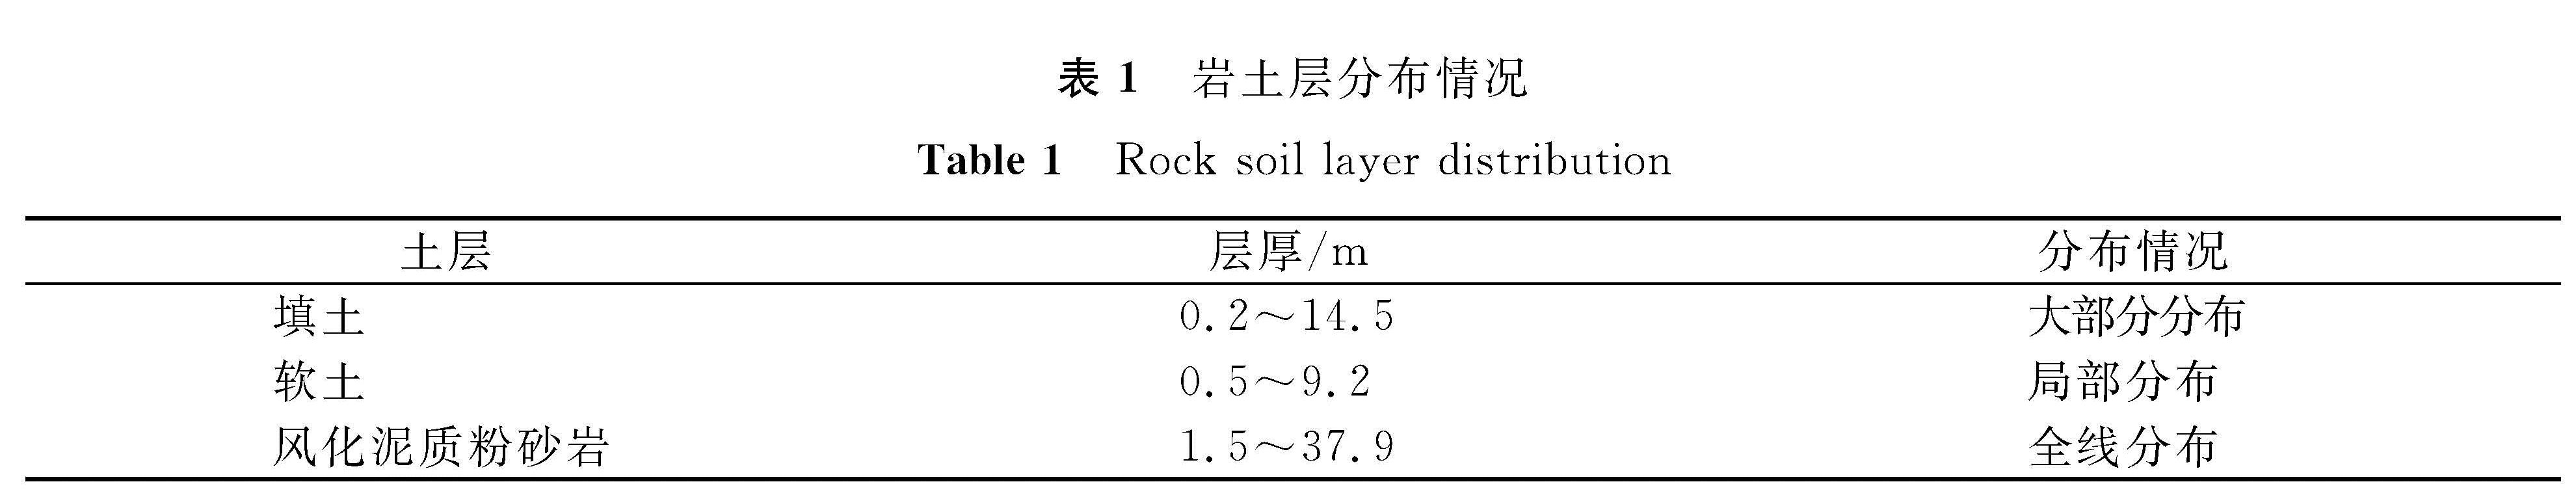 表1 岩土层分布情况<br/>Table 1 Rock soil layer distribution